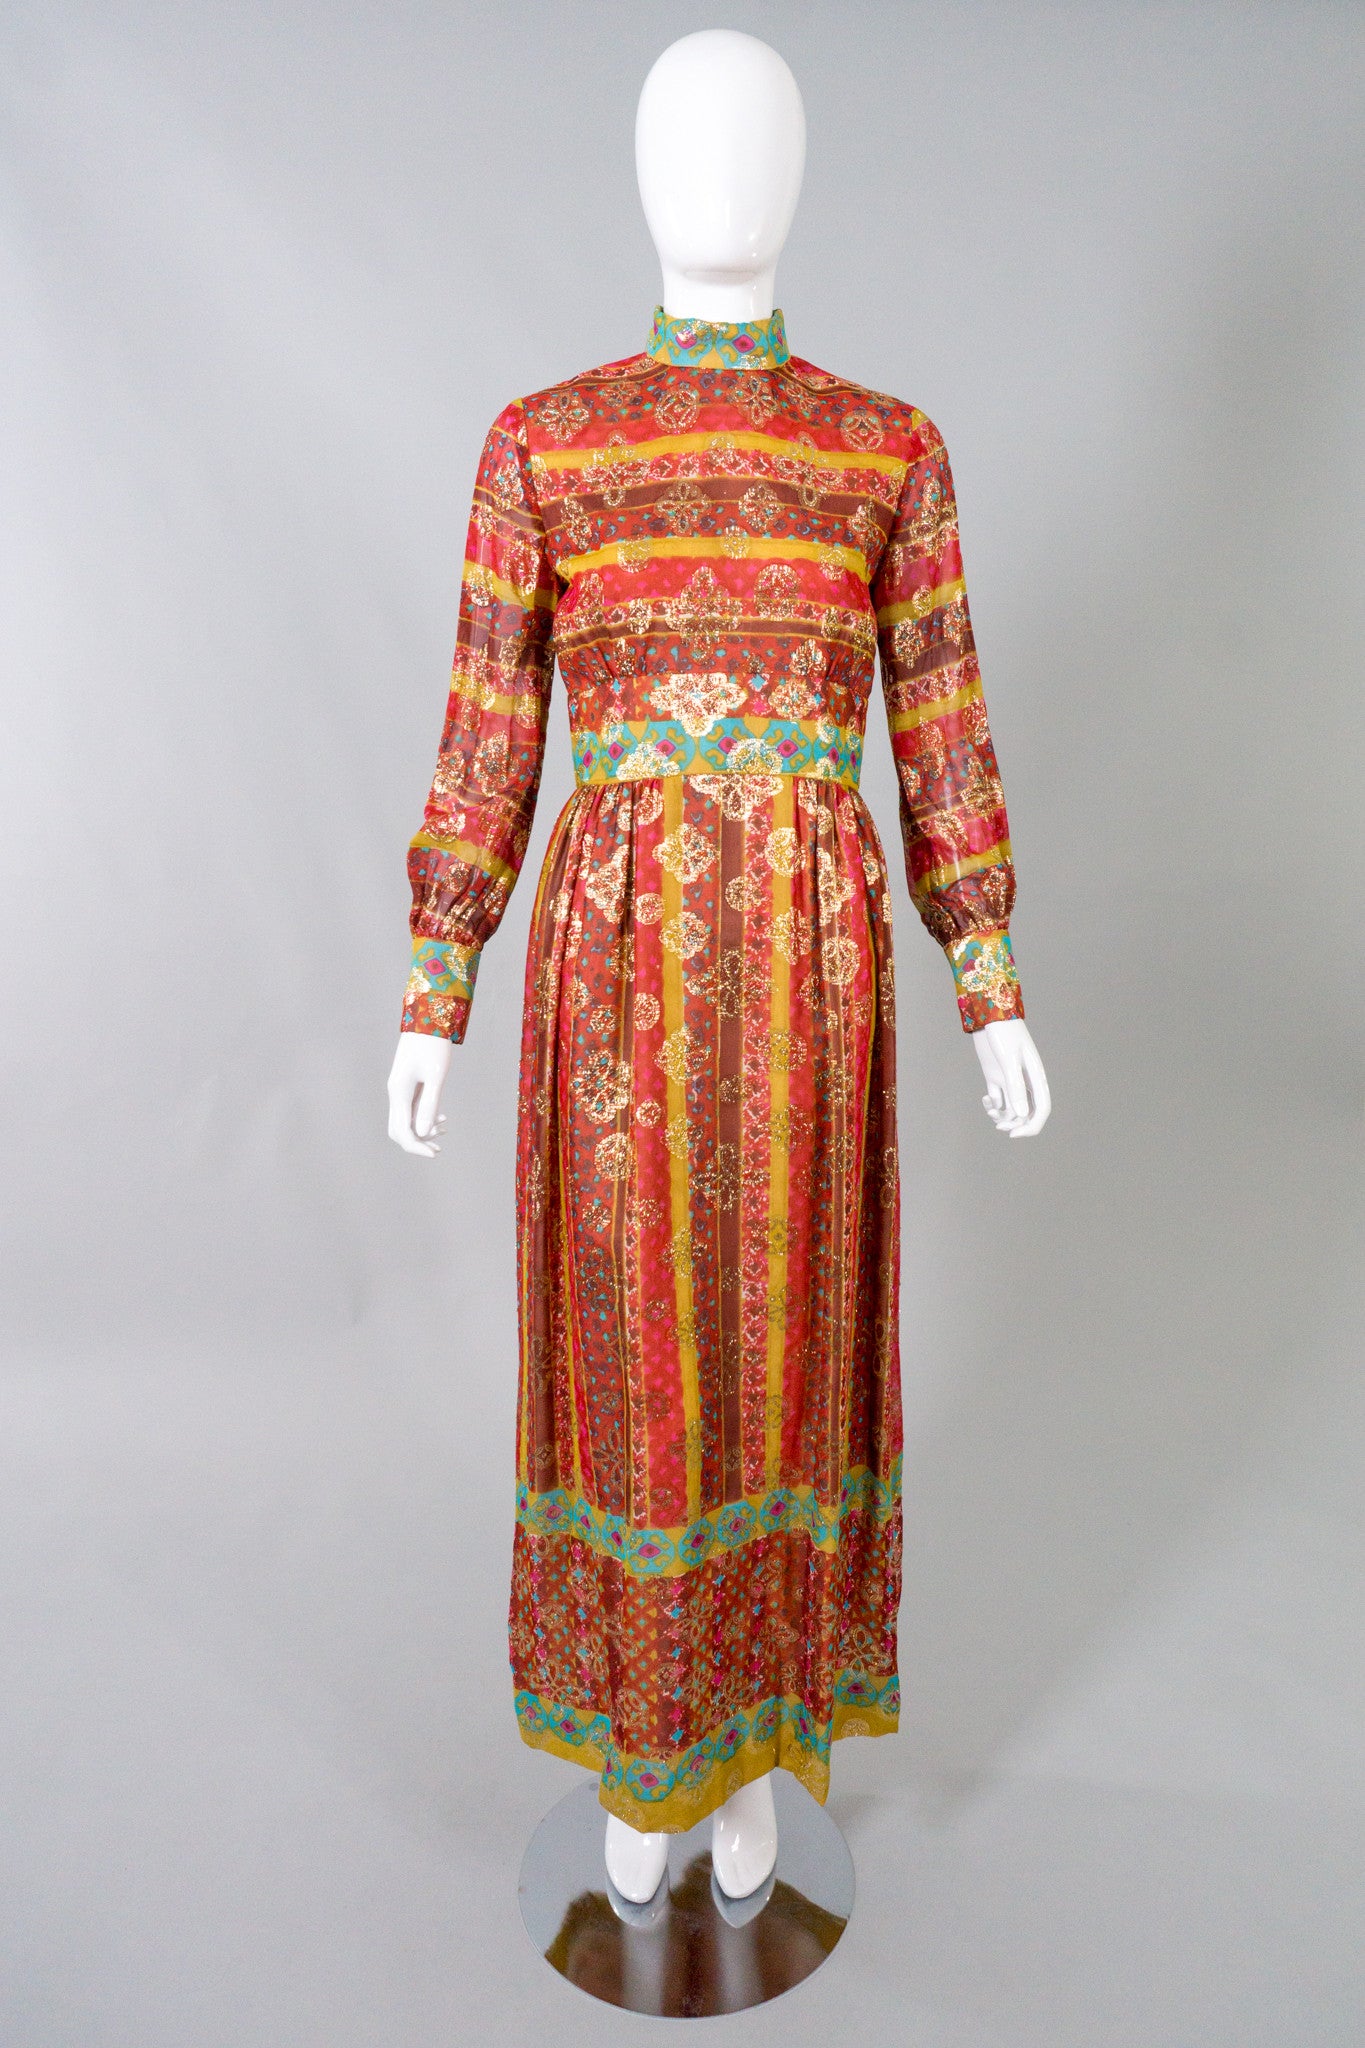 Victor Costa Romantica Metallic Batik Print Dress